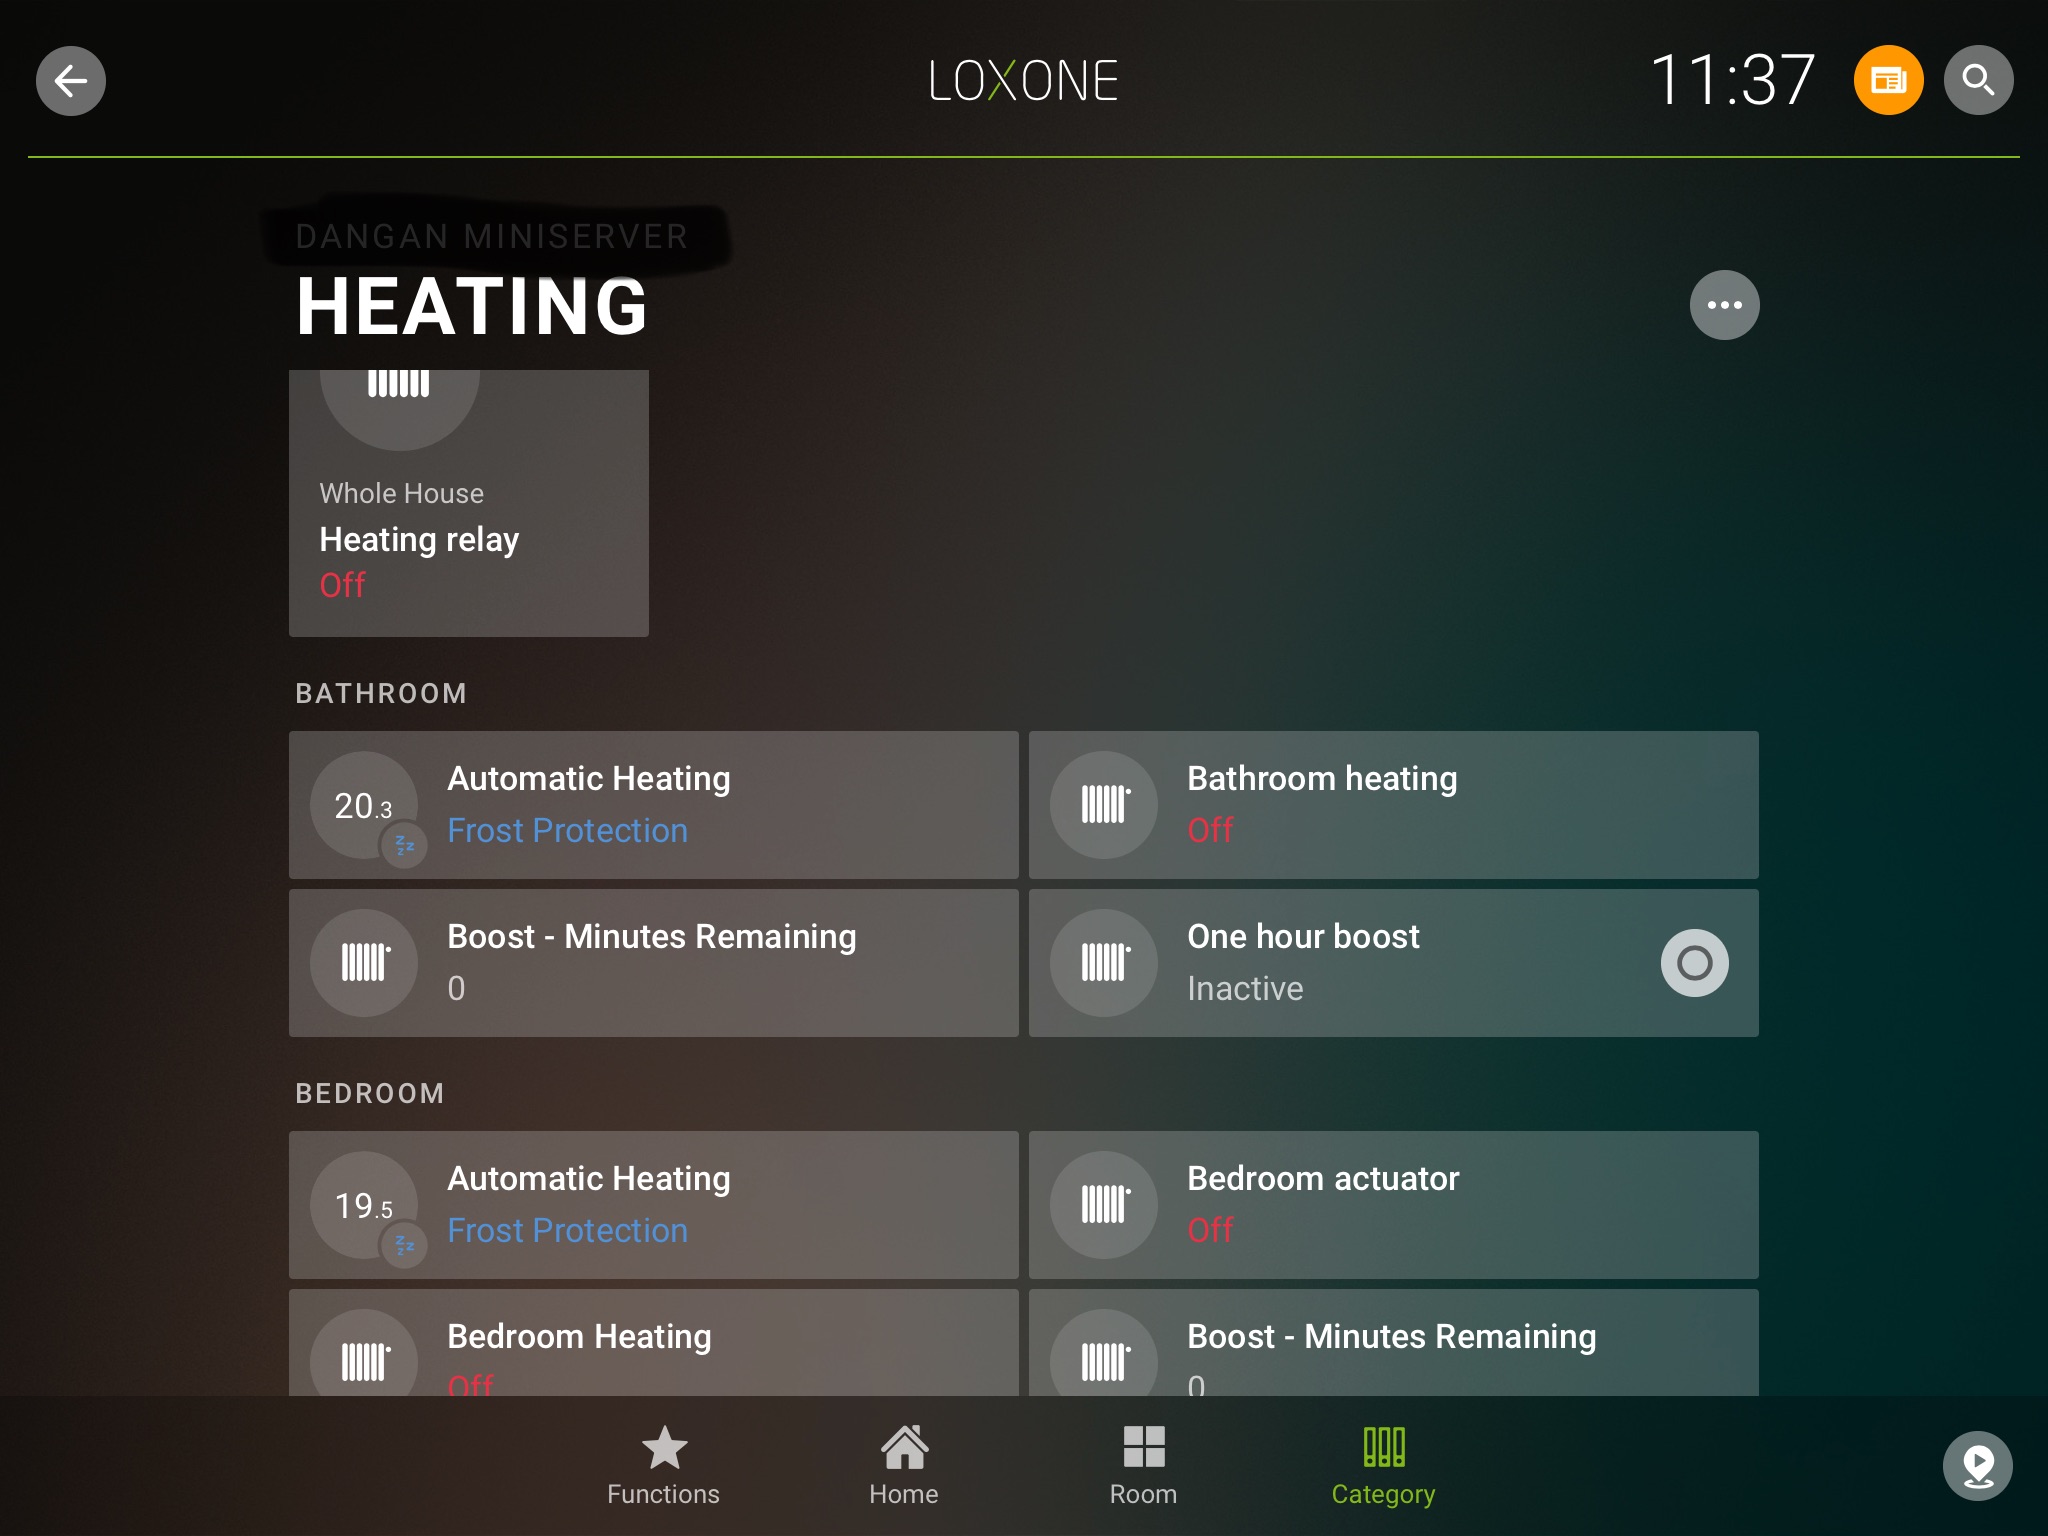 Loxone Heating Control on Ipad